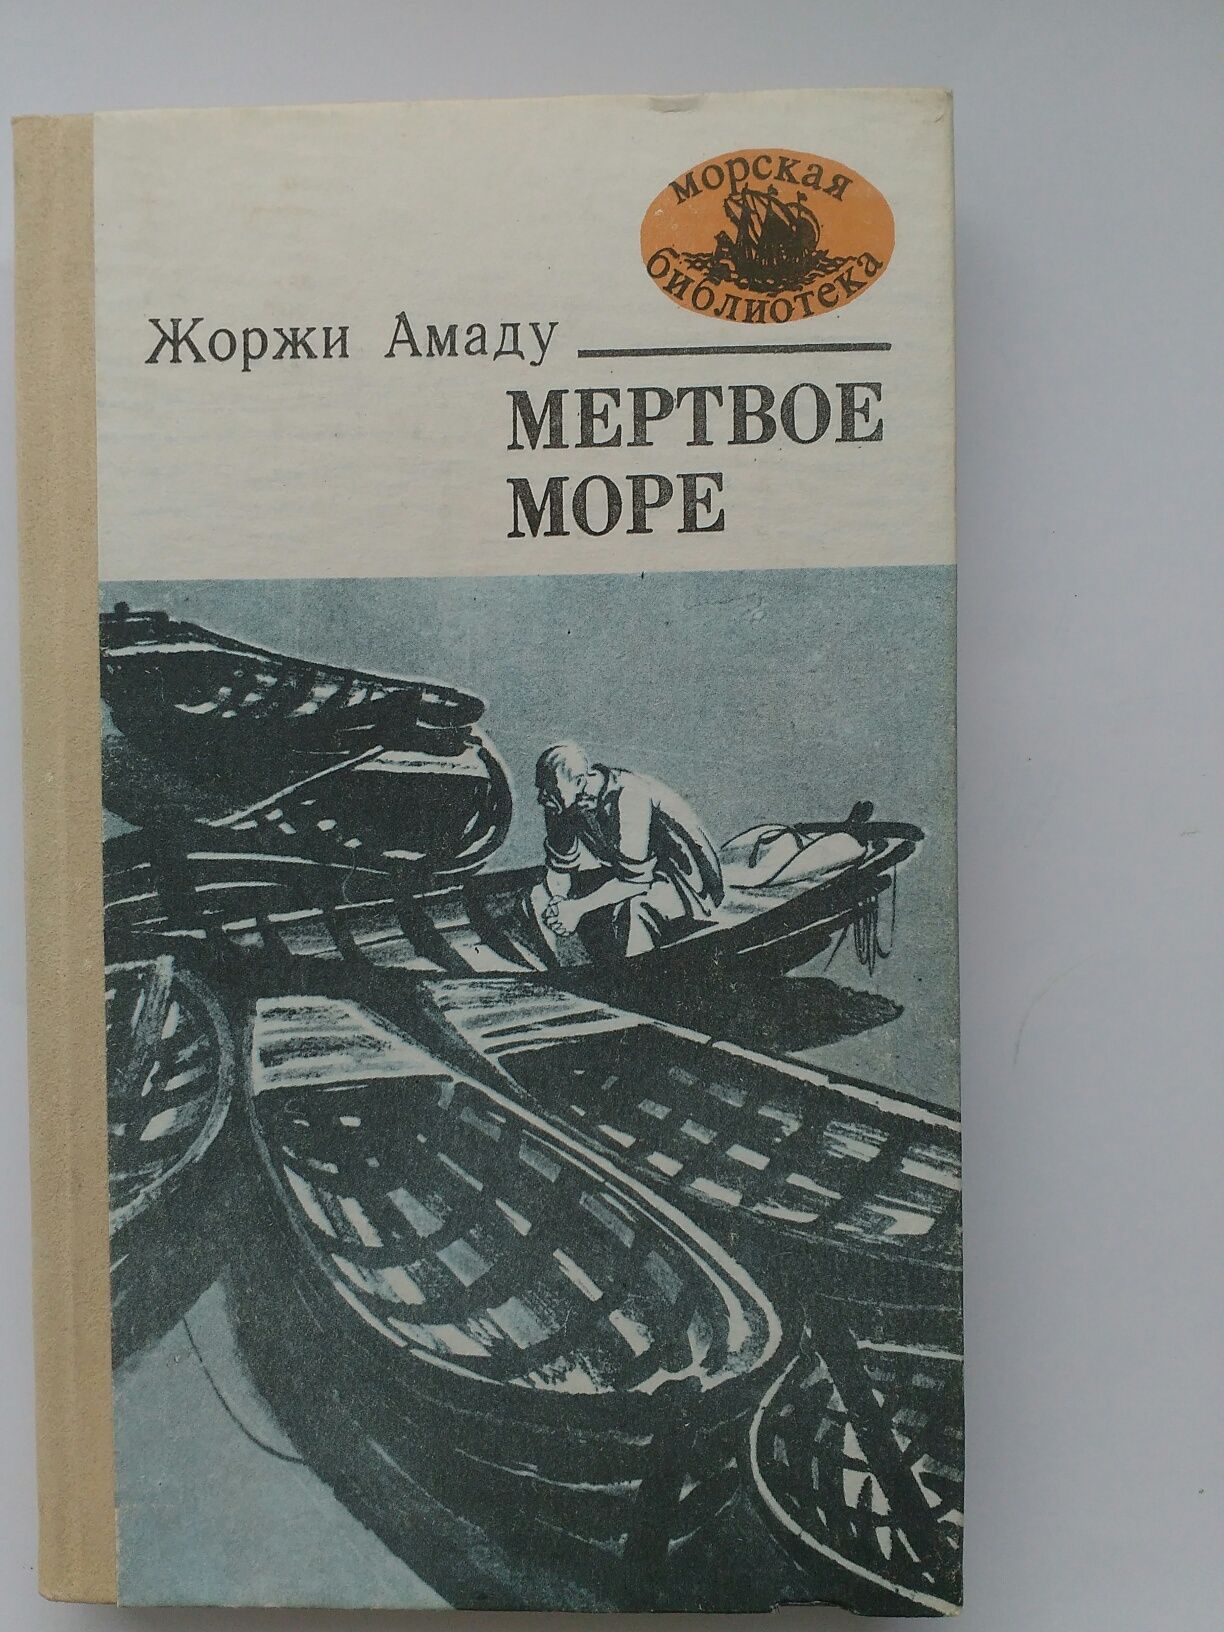 Книга Жоржи Амаду"Мертвое море"